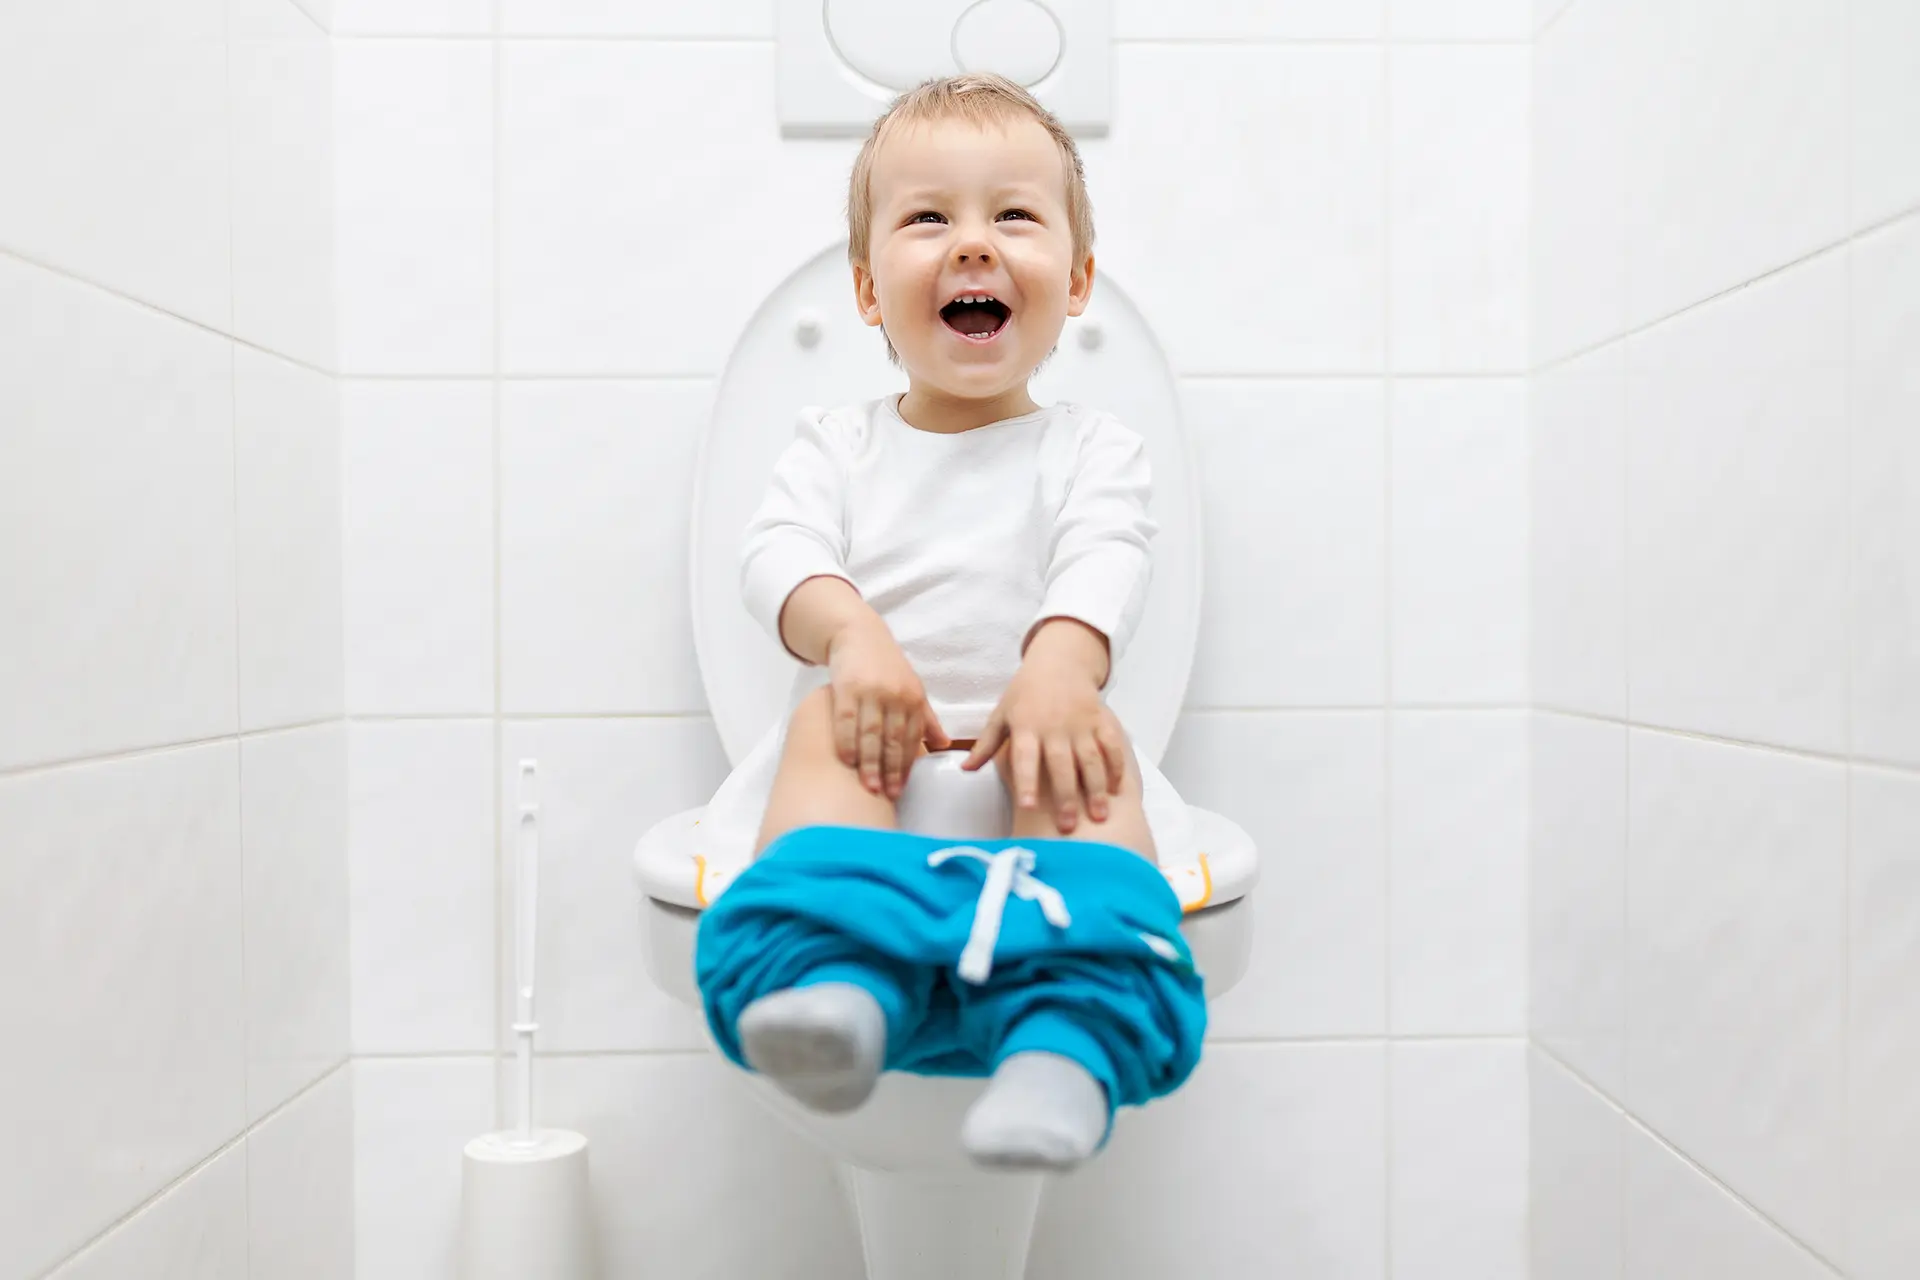 Un bébé apprend la propreté selon la méthode Montessori.